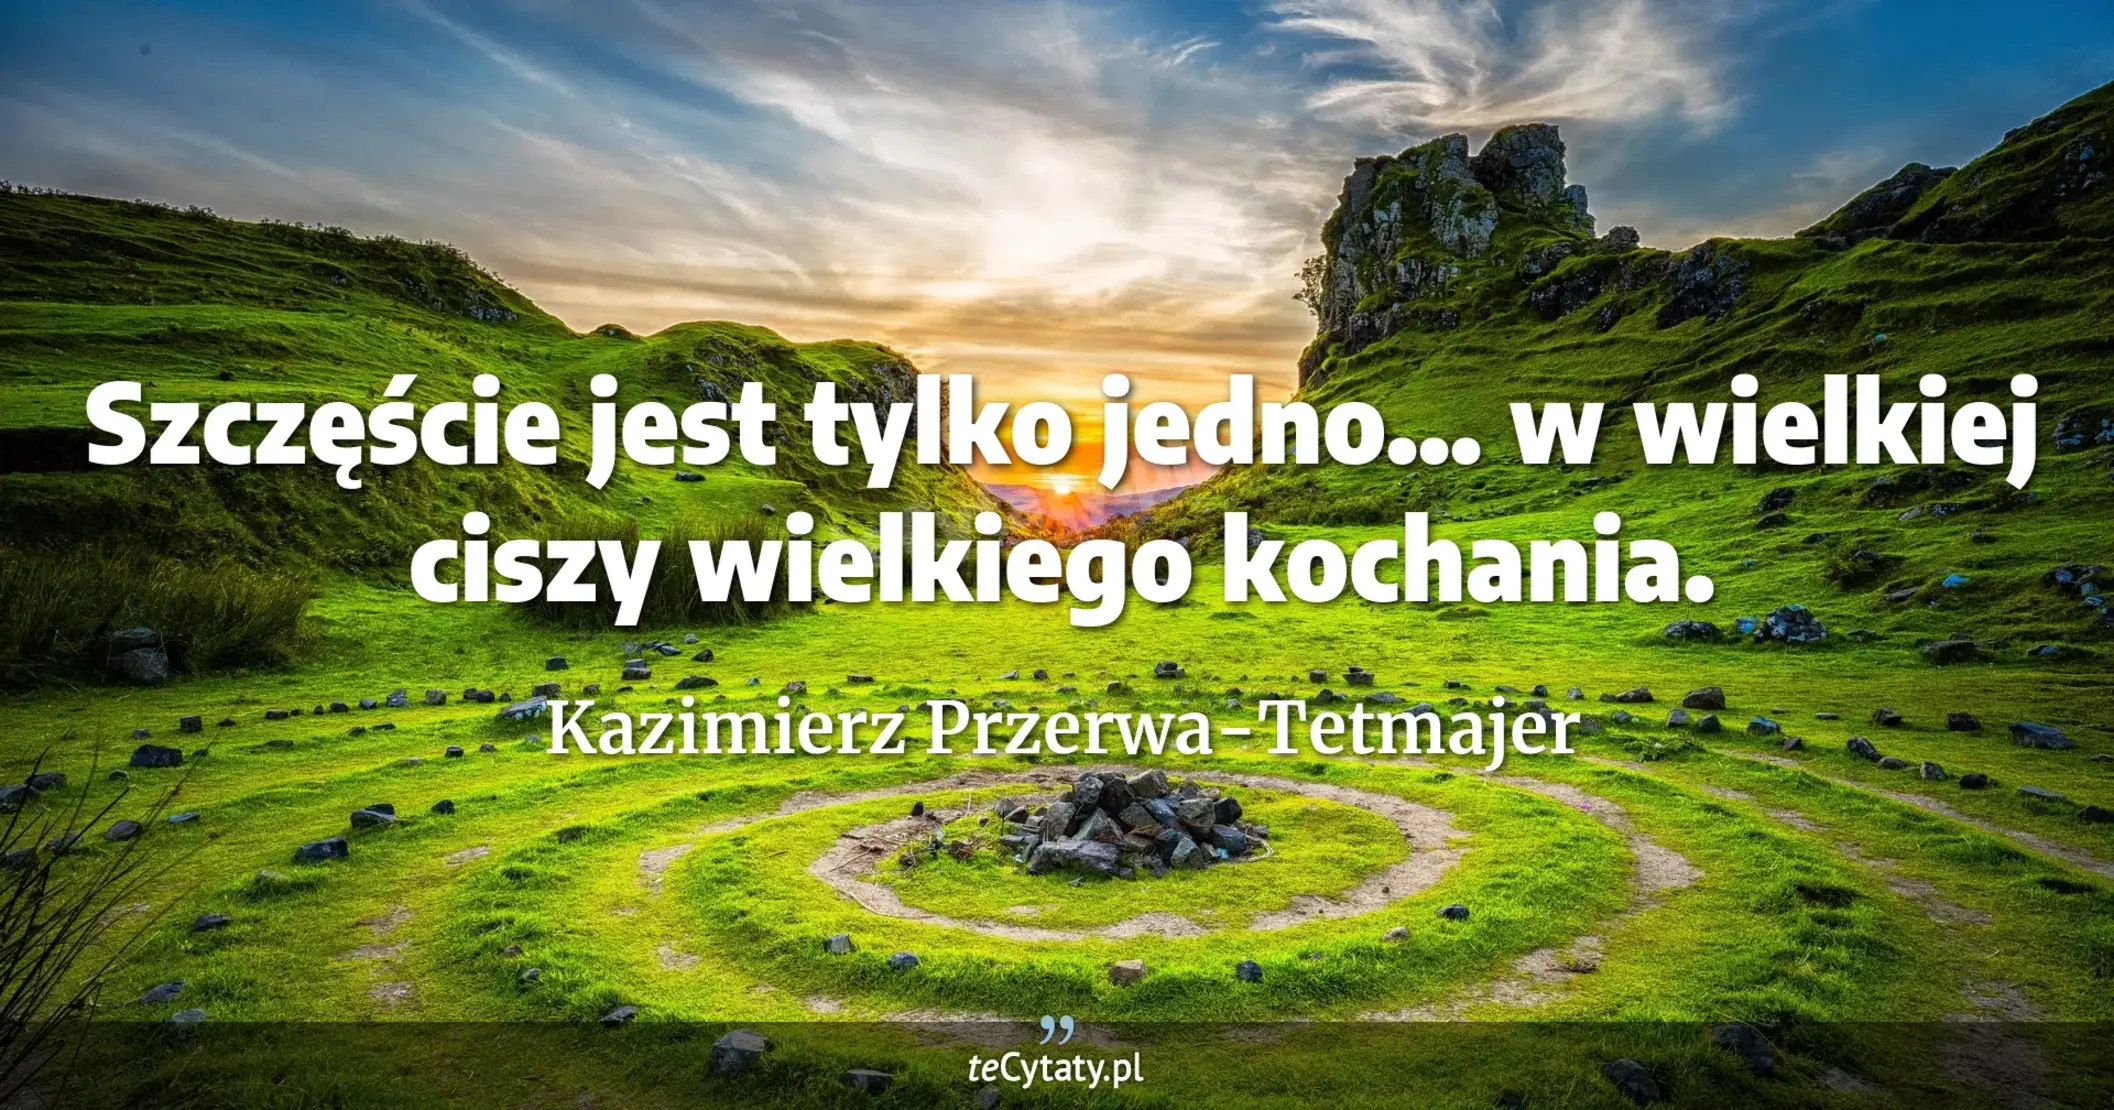 Szczęście jest tylko jedno... w wielkiej ciszy wielkiego kochania. - Kazimierz Przerwa-Tetmajer